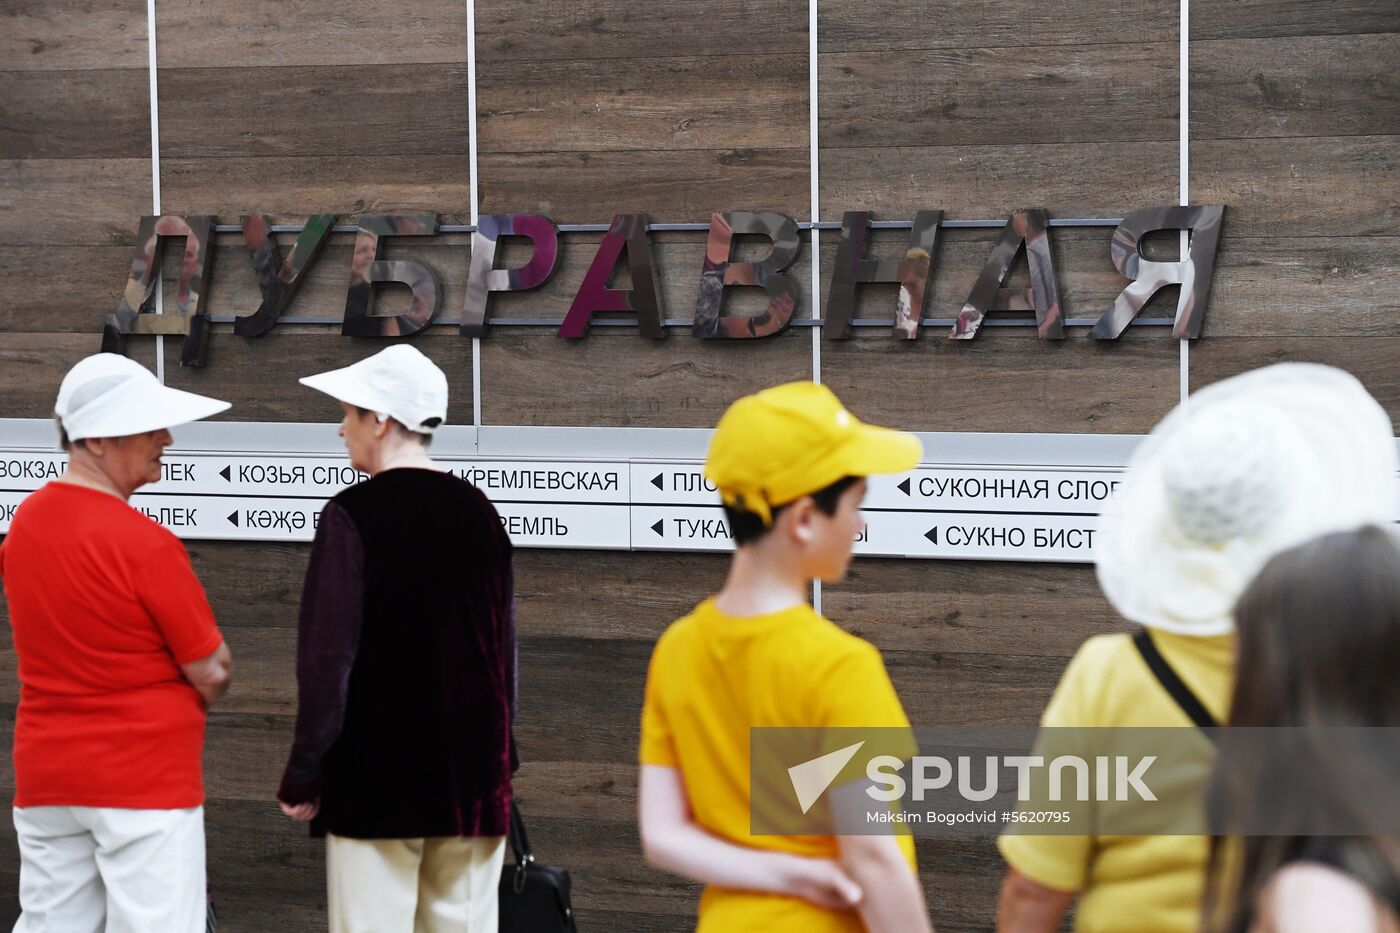 Dubravnaya metro station opens in Kazan